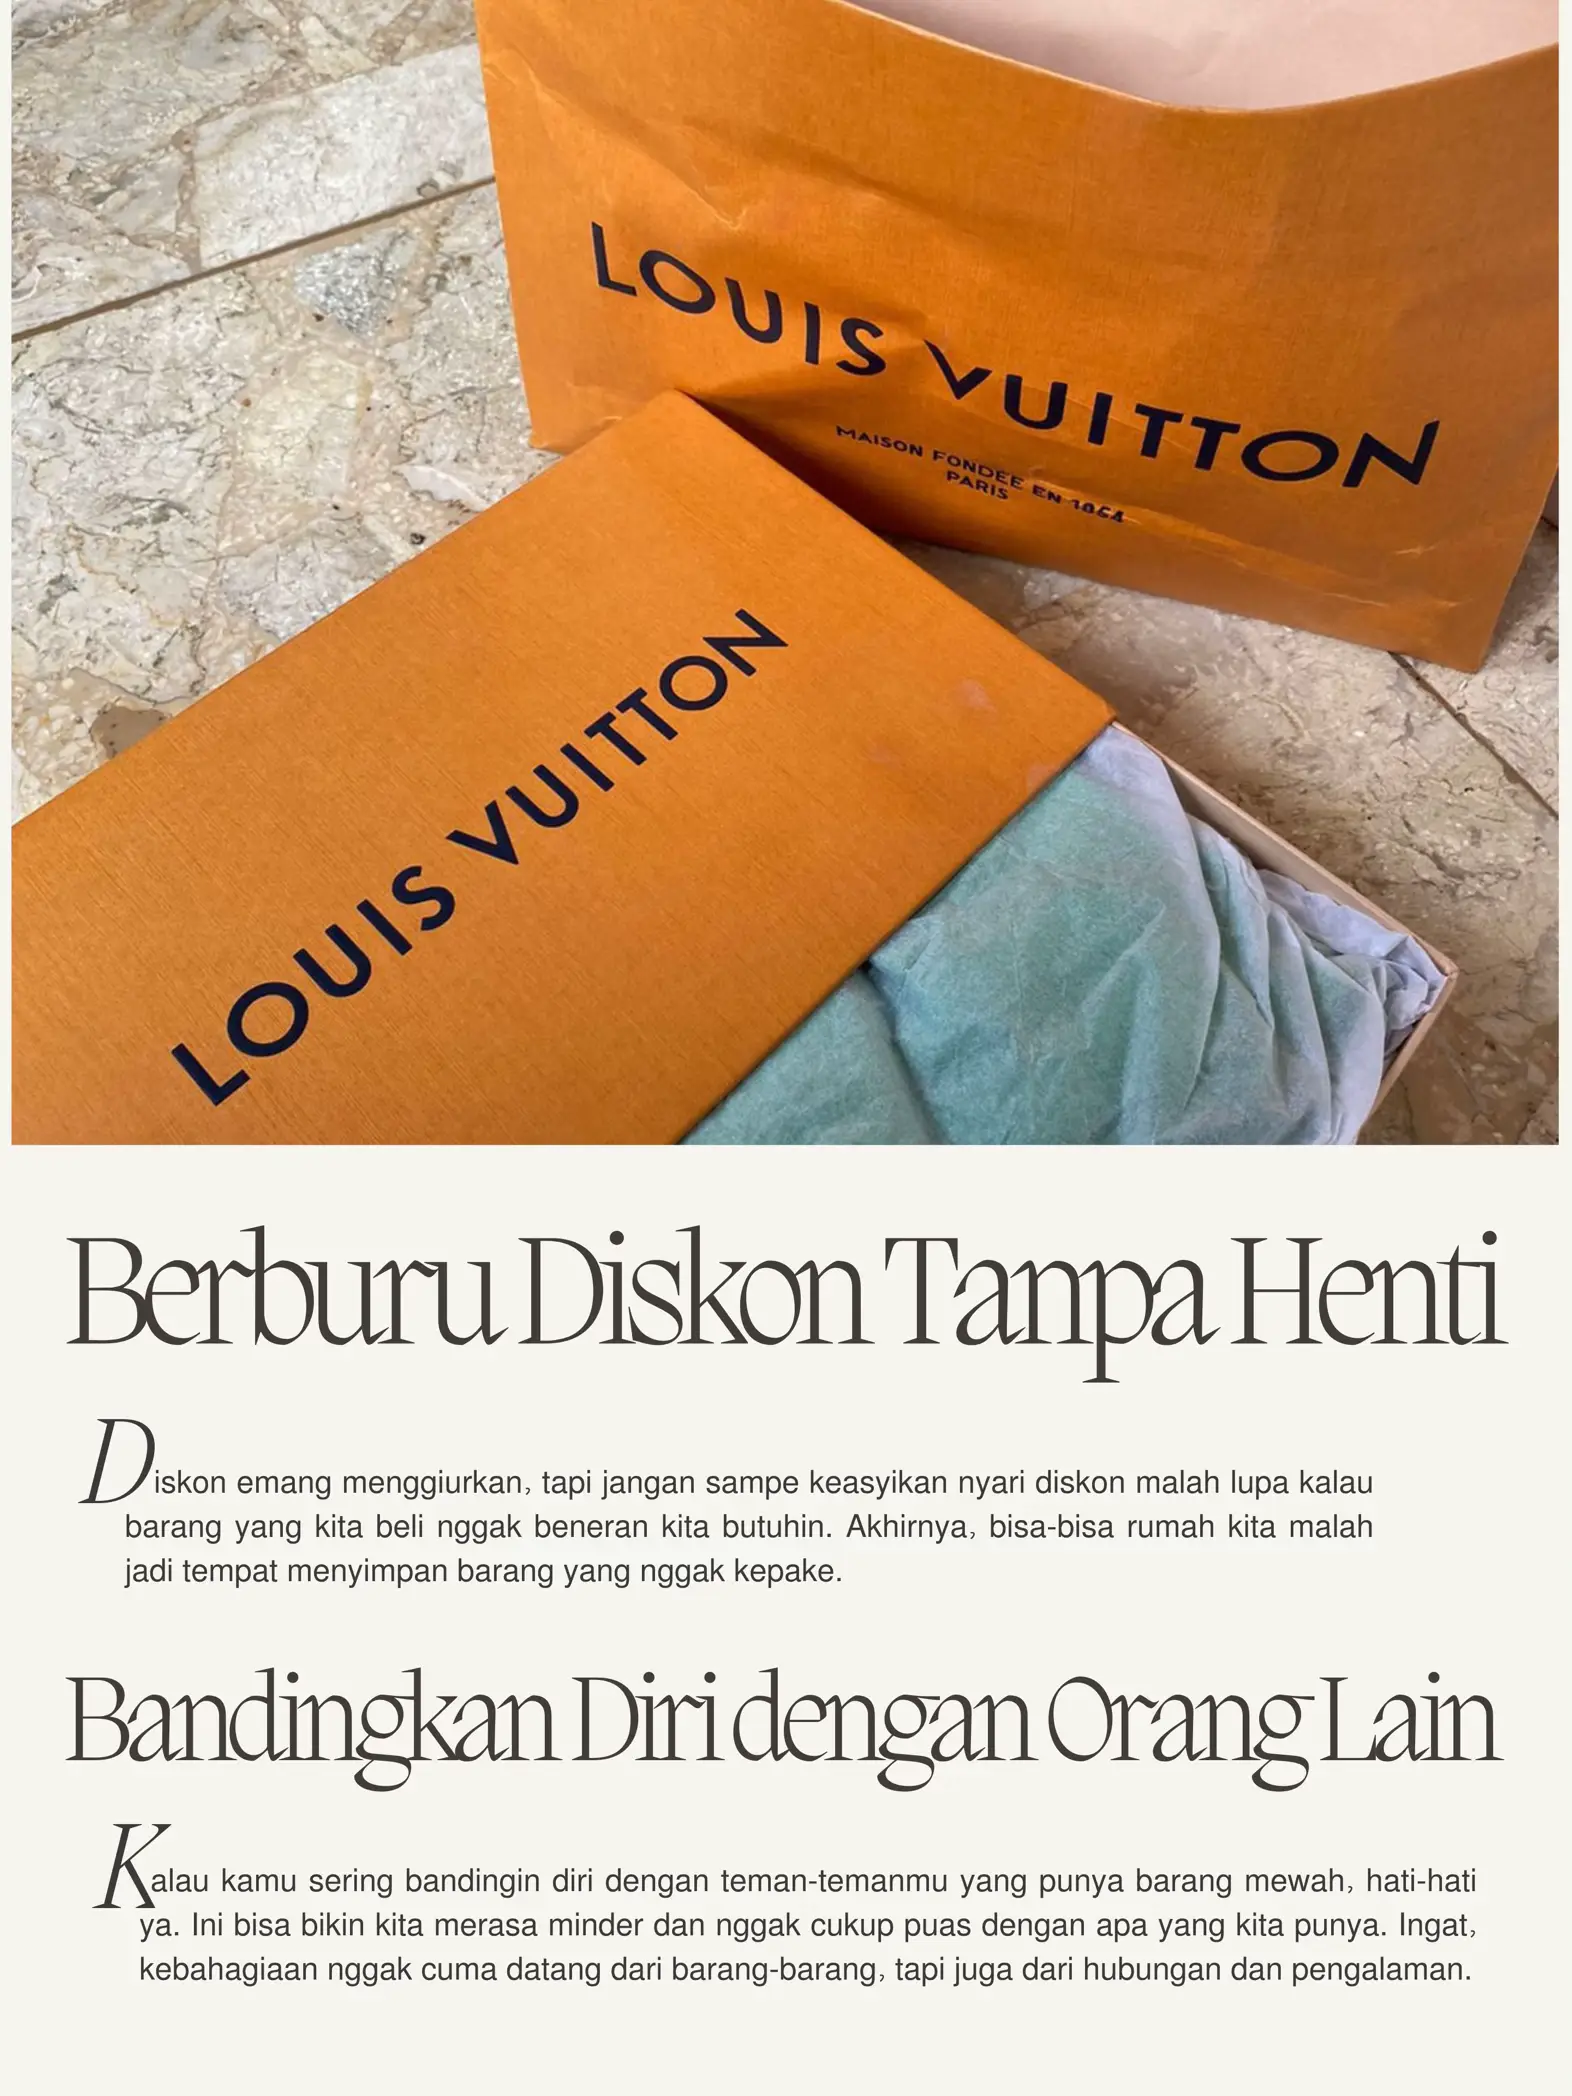 Things That Matter: Louis Vuitton receipt